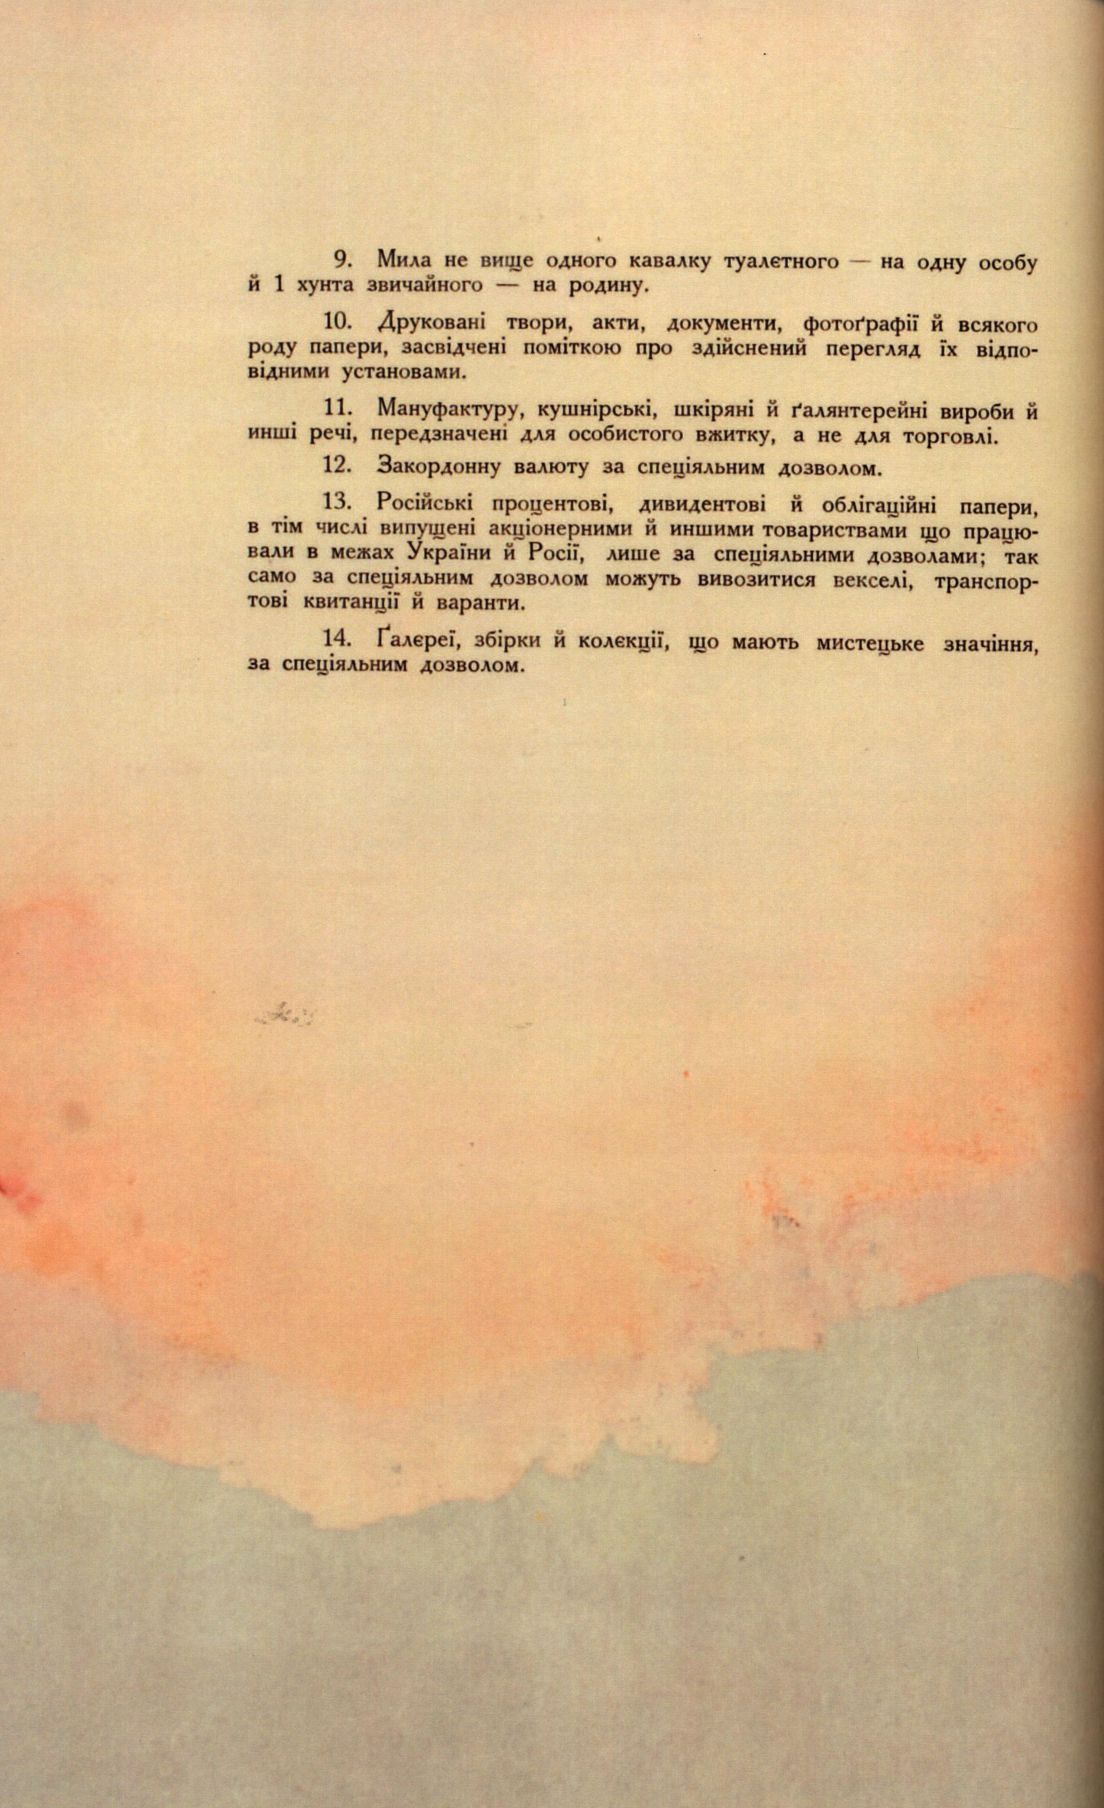 Traktat Pokoju między Polską a Rosją i Ukrainą podpisany w Rydze dnia 18 marca 1921 roku, s. 57, MSZ, sygn. 6739.